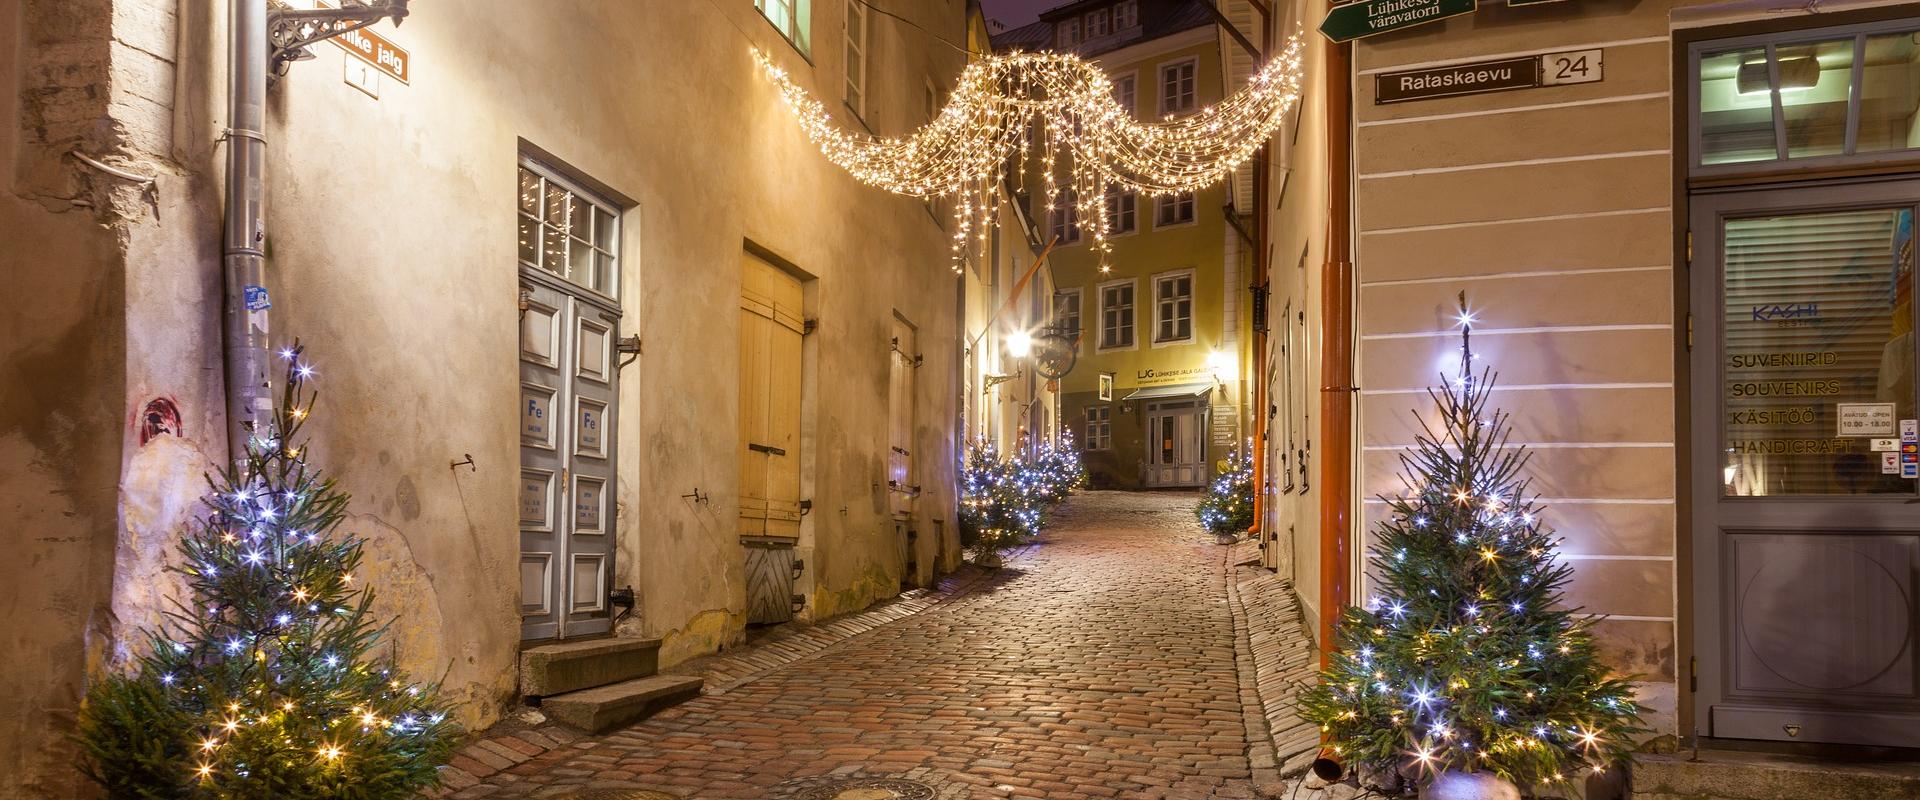 Magical Christmas Tour in Tallinn Old Town